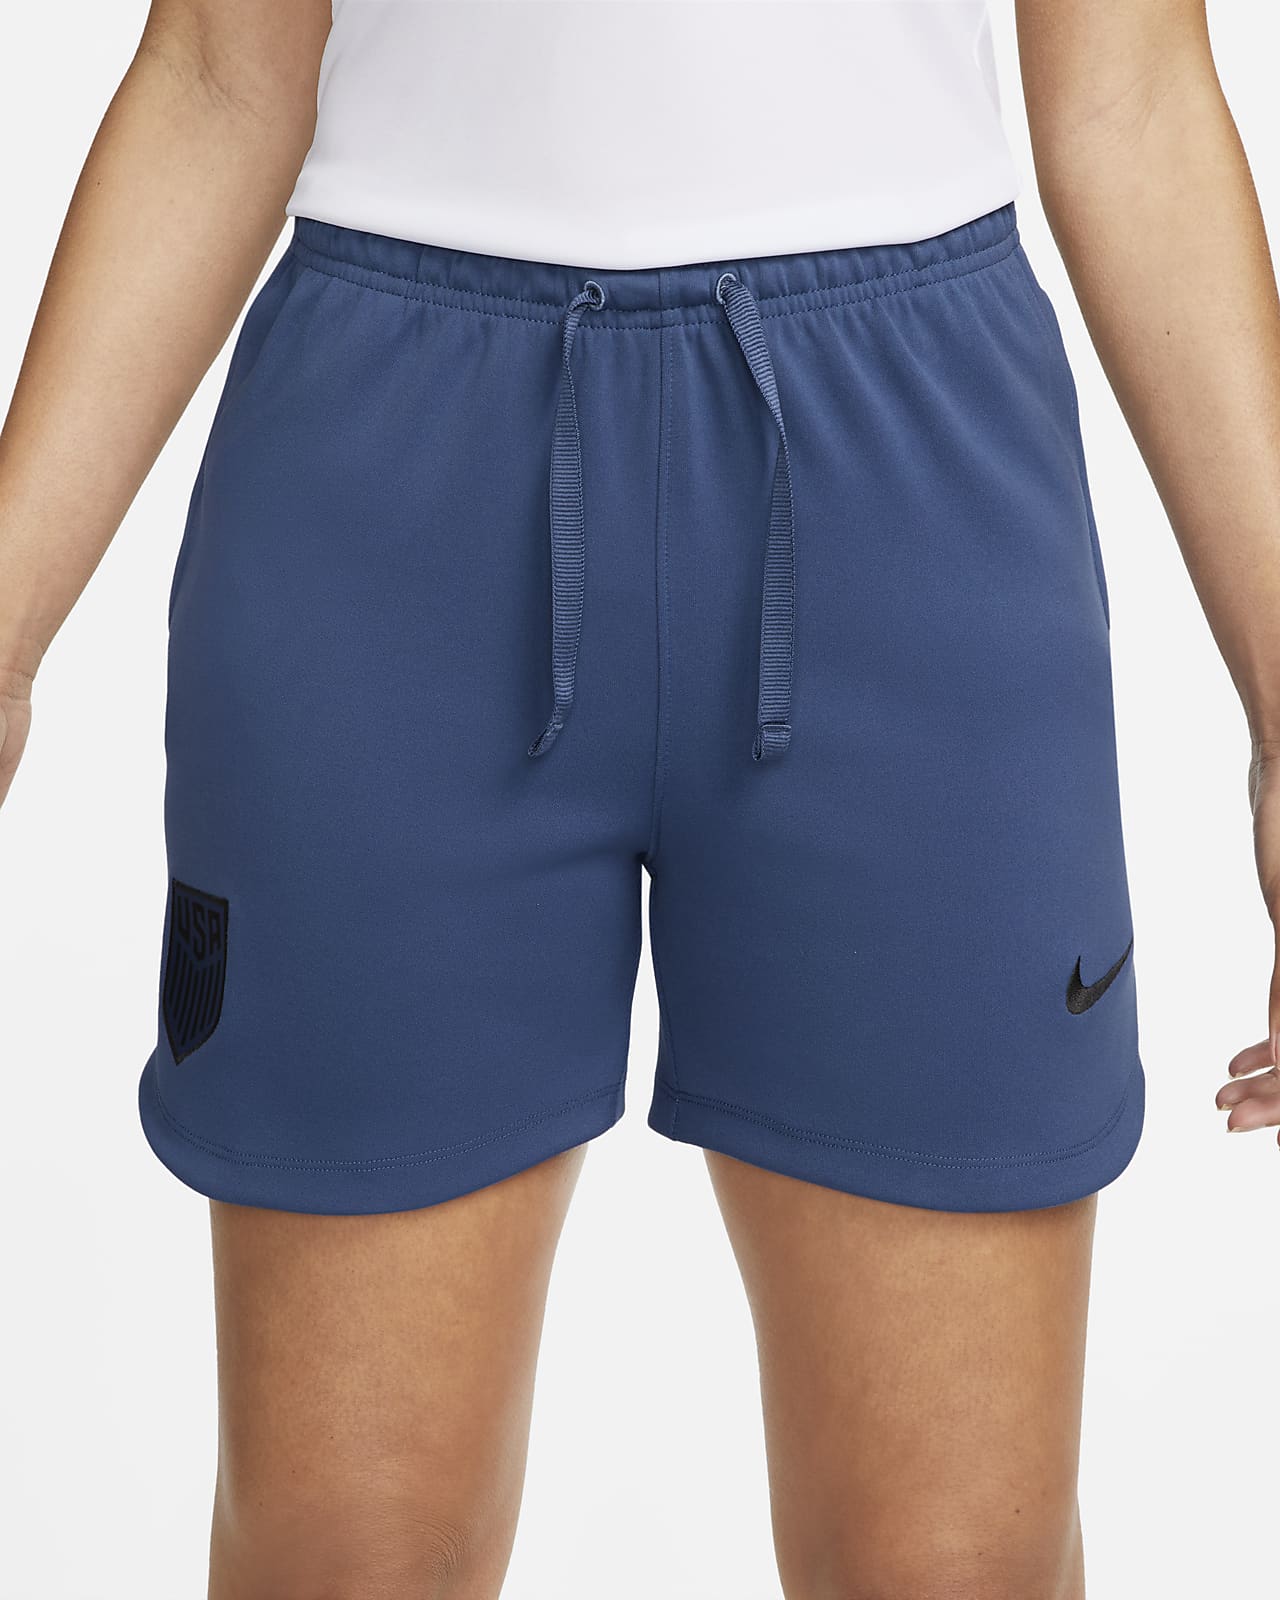 Women's Nike Dri-FIT Knit Soccer Shorts. Nike.com